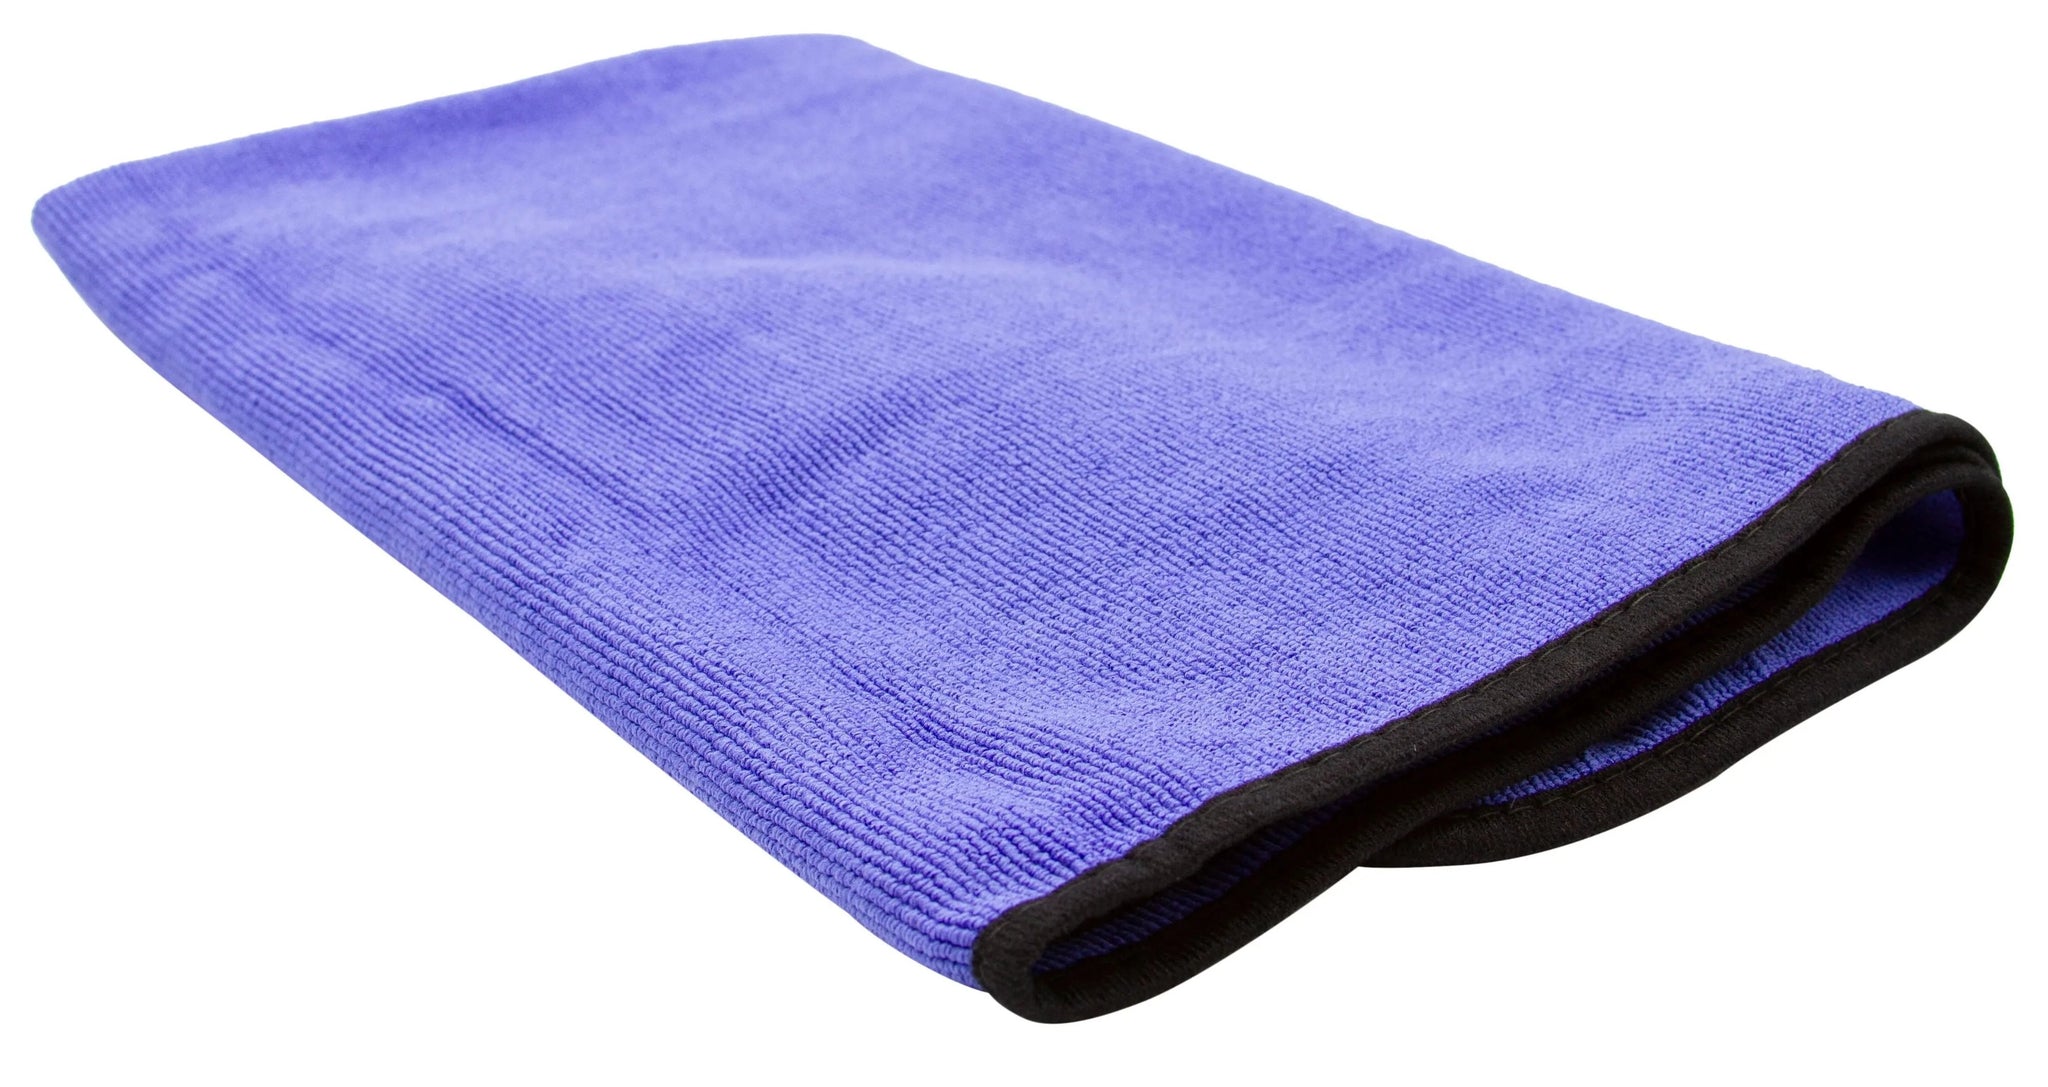 Super Absorbent Microfiber Towel